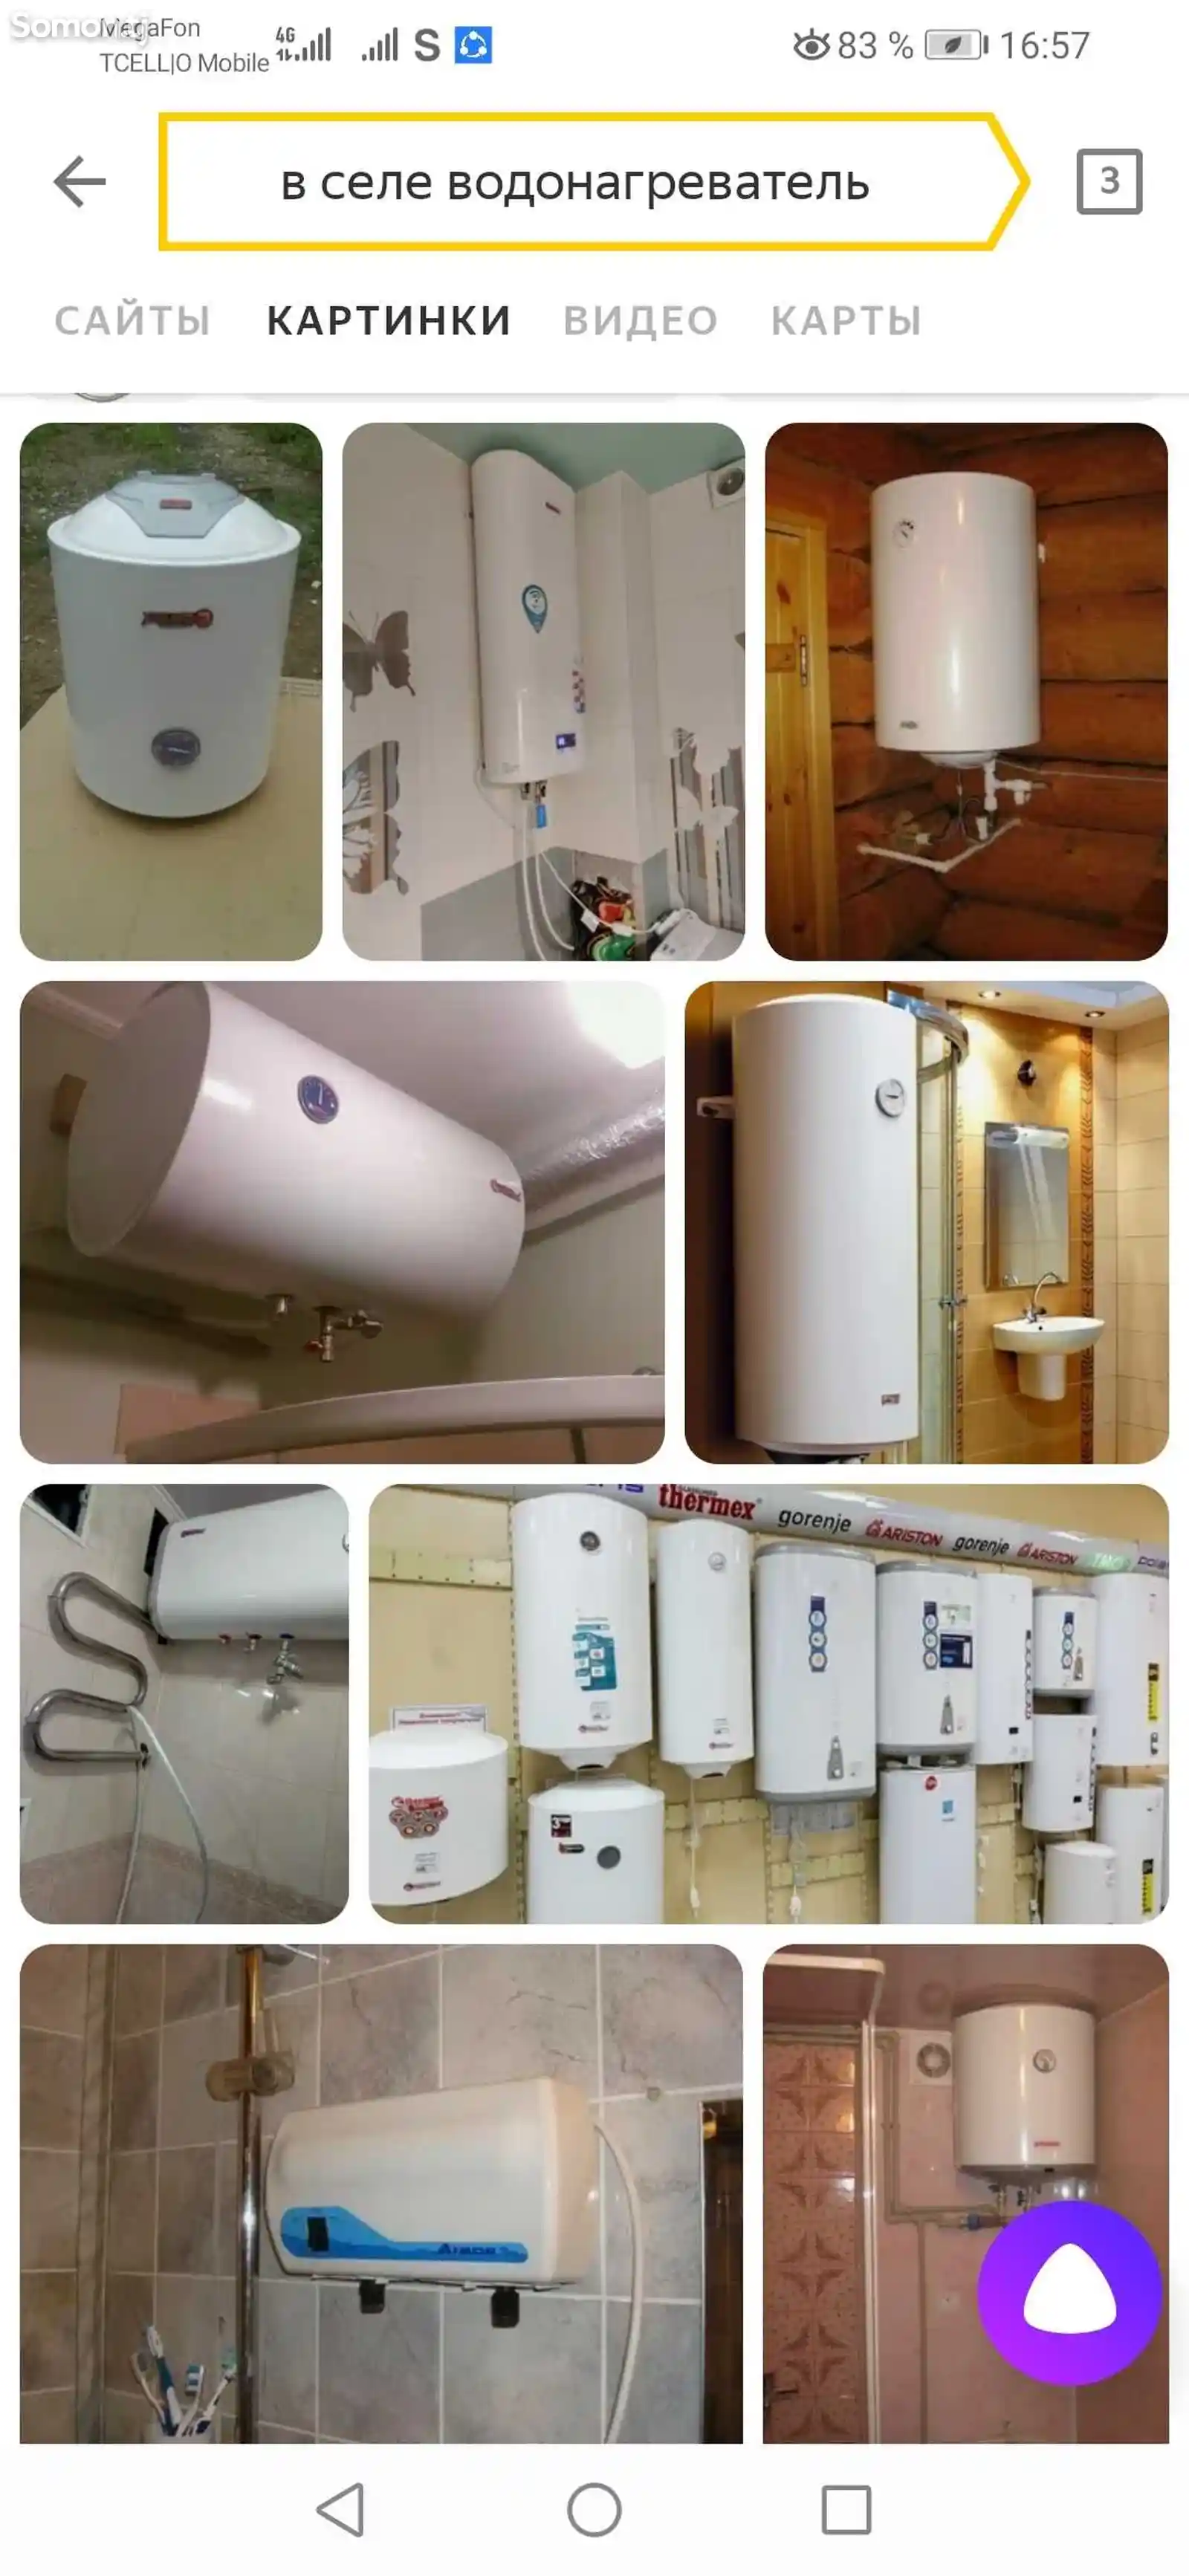 Услуги по ремонту и установке водонагревателей 24ч-3